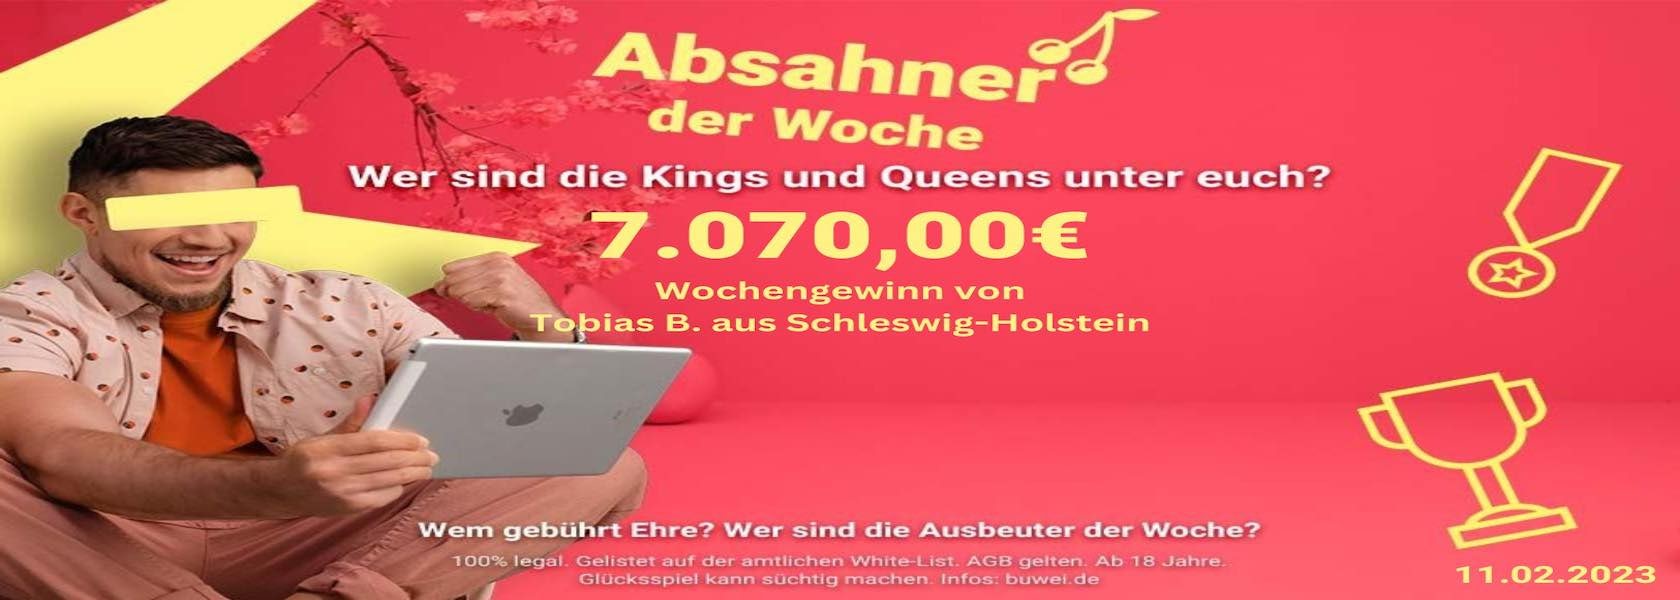 absahner-der-woche-11022023-bbo-1680x600